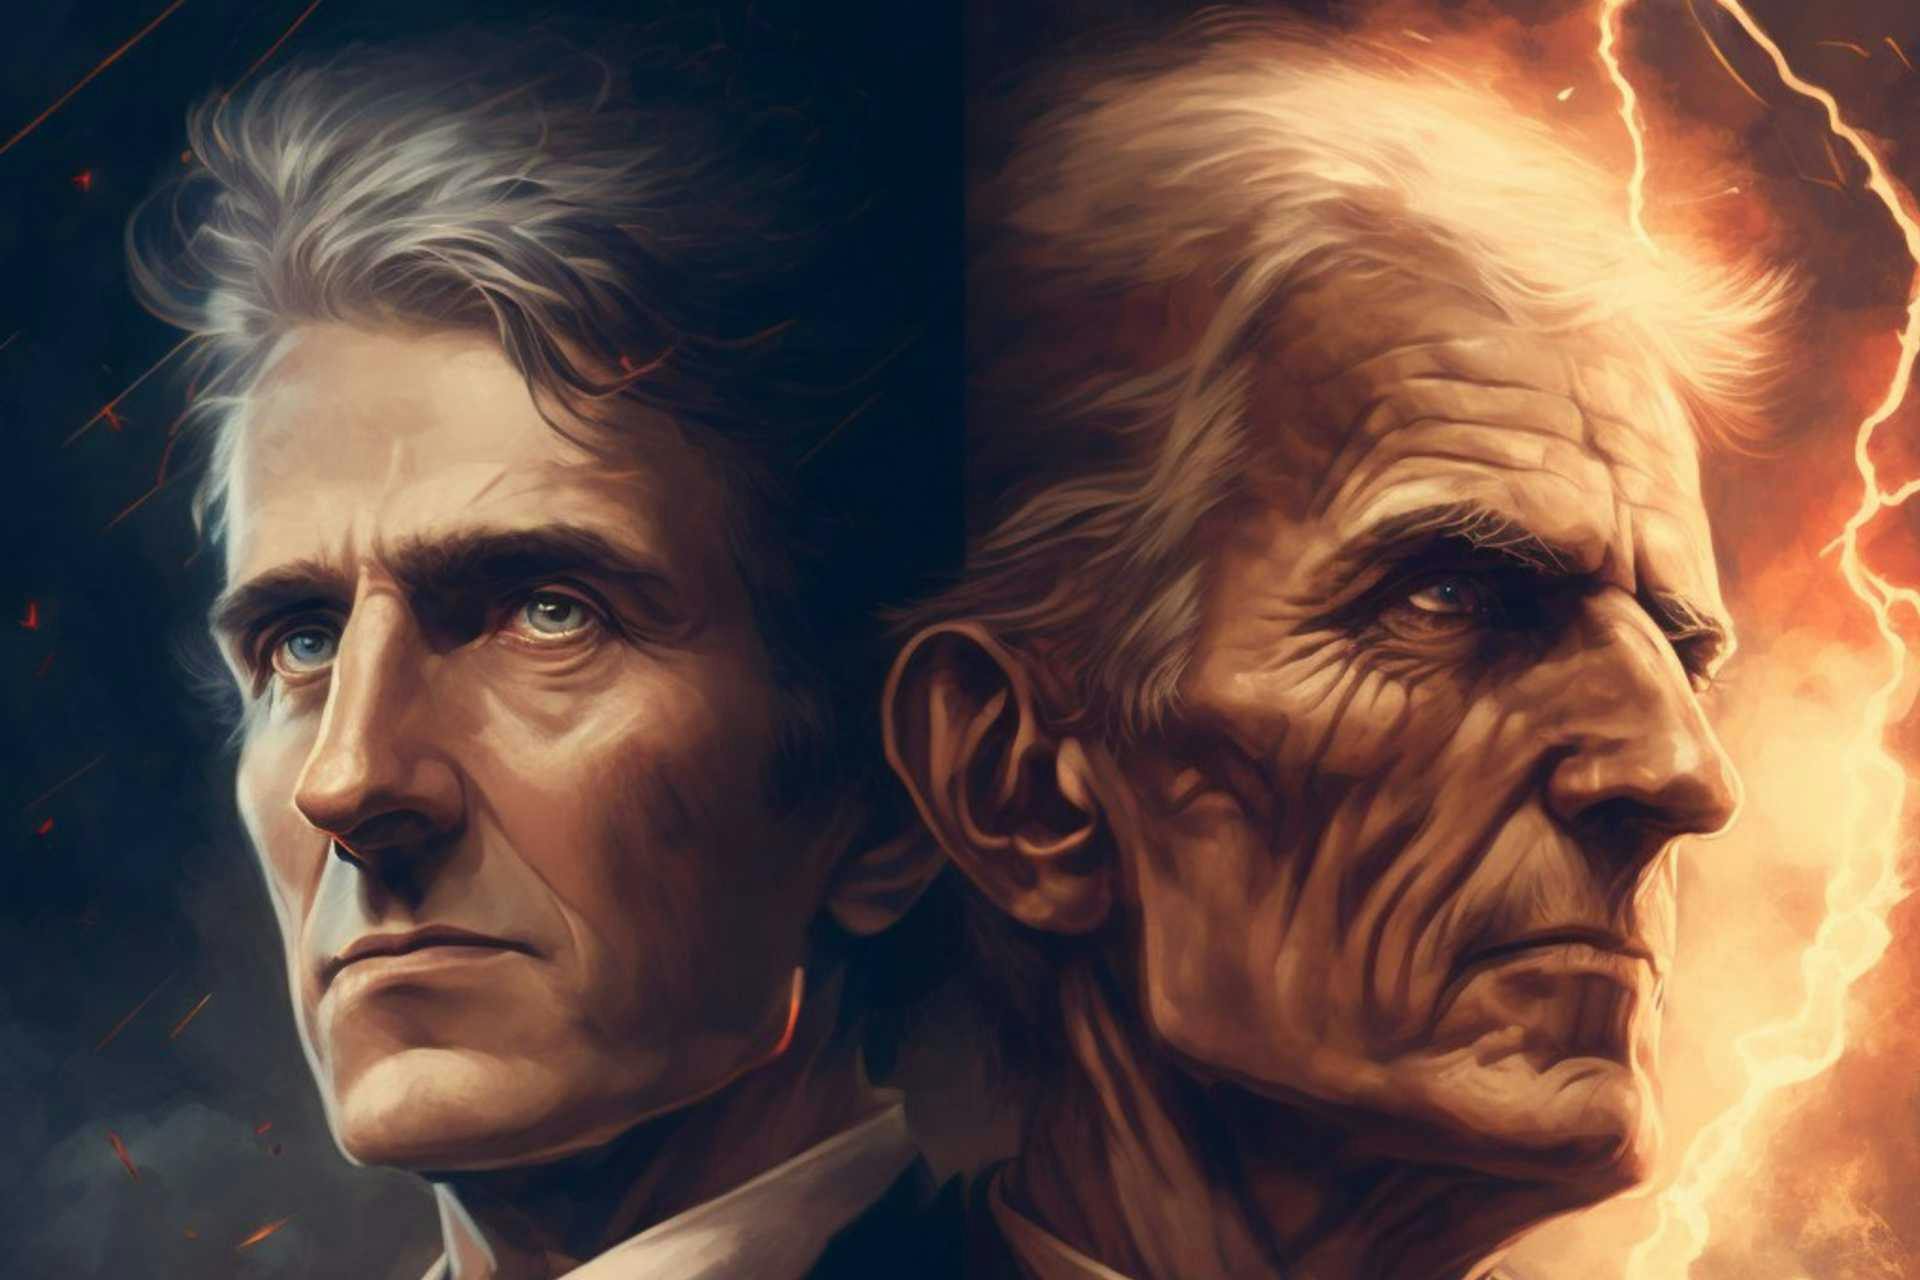 Sitilisierte Portraits von Thomas Edison & Nikola Tesla.